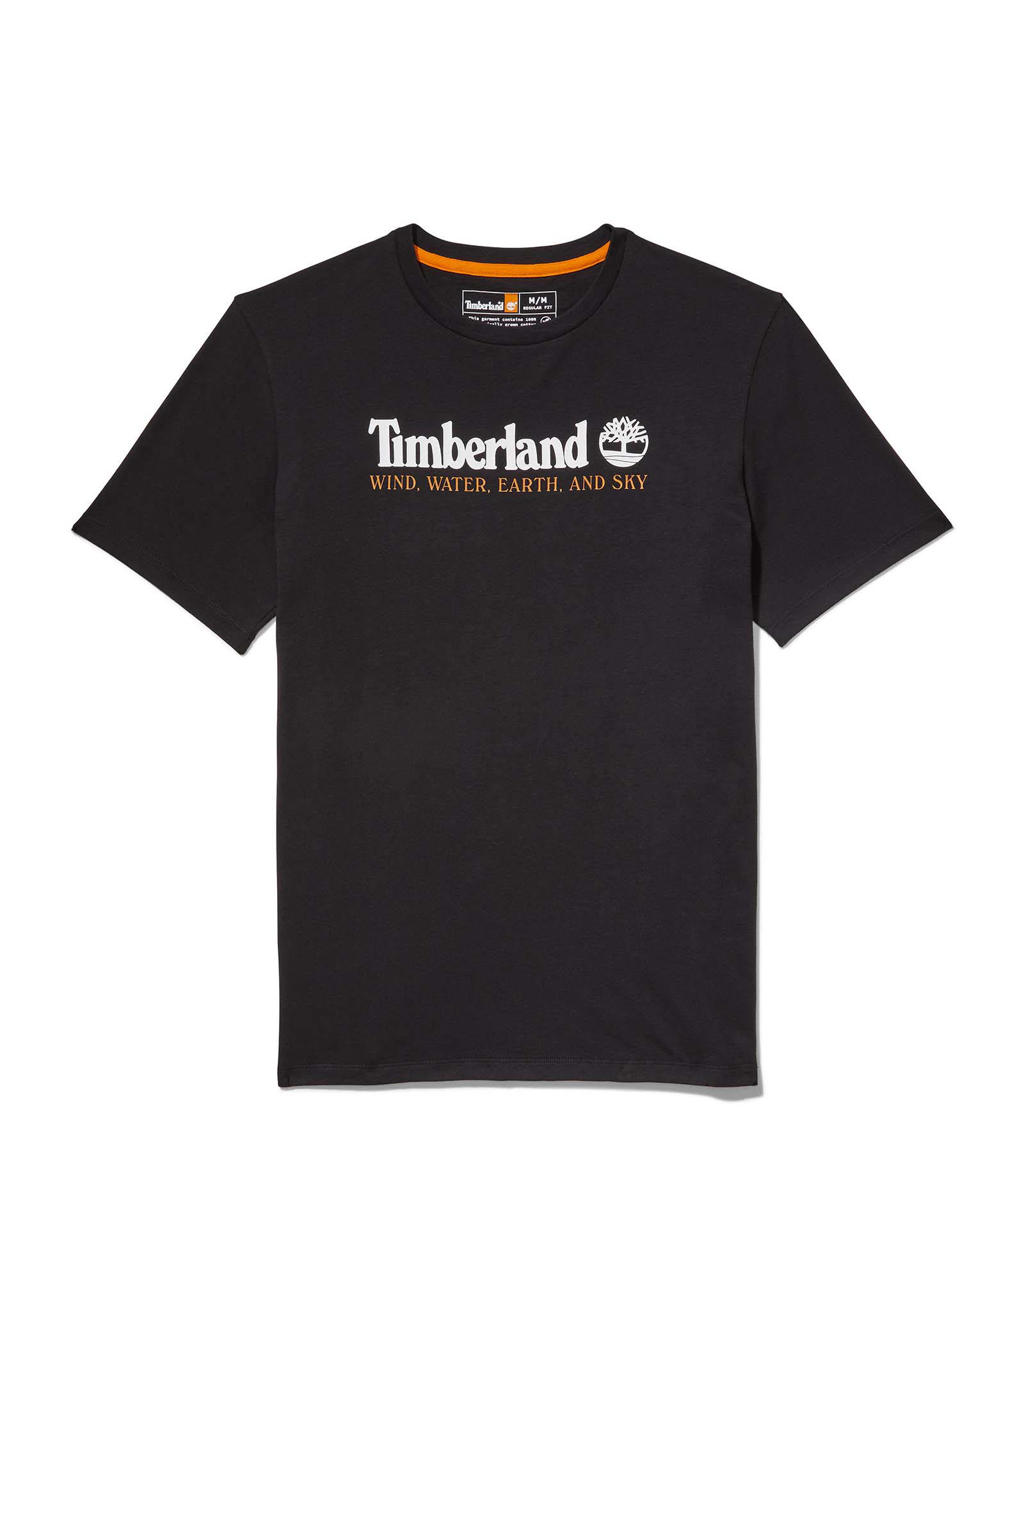 Zwarte heren Timberland T-shirt van katoen met logo dessin, korte mouwen en ronde hals